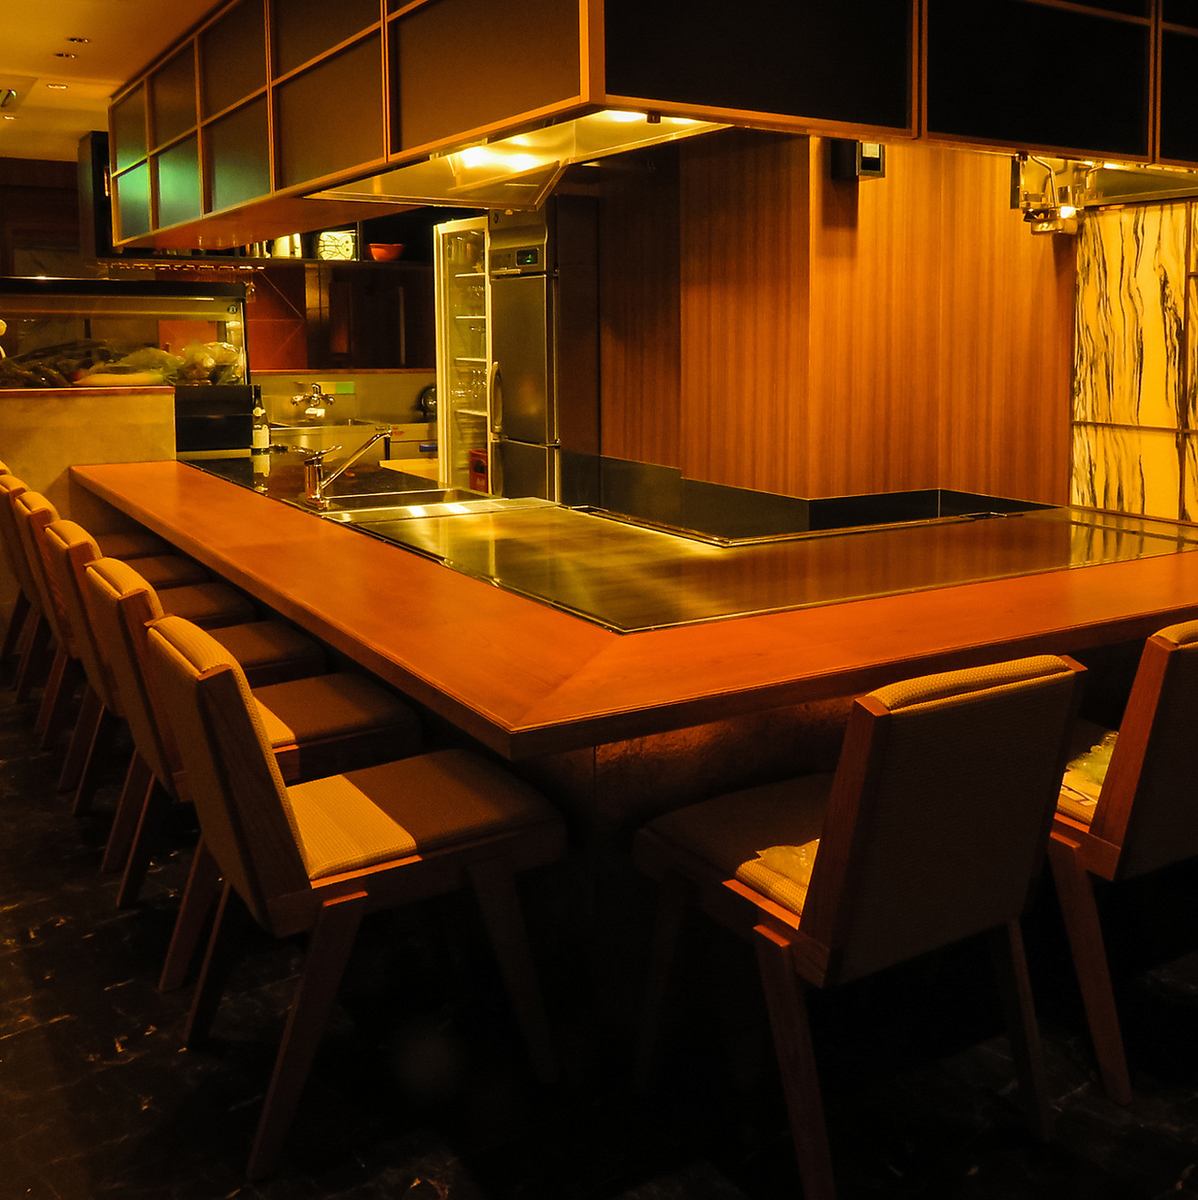 Hiroshima Wagyu Sirloin Steak Course ¥6,500 Anniversary Course ¥8,000